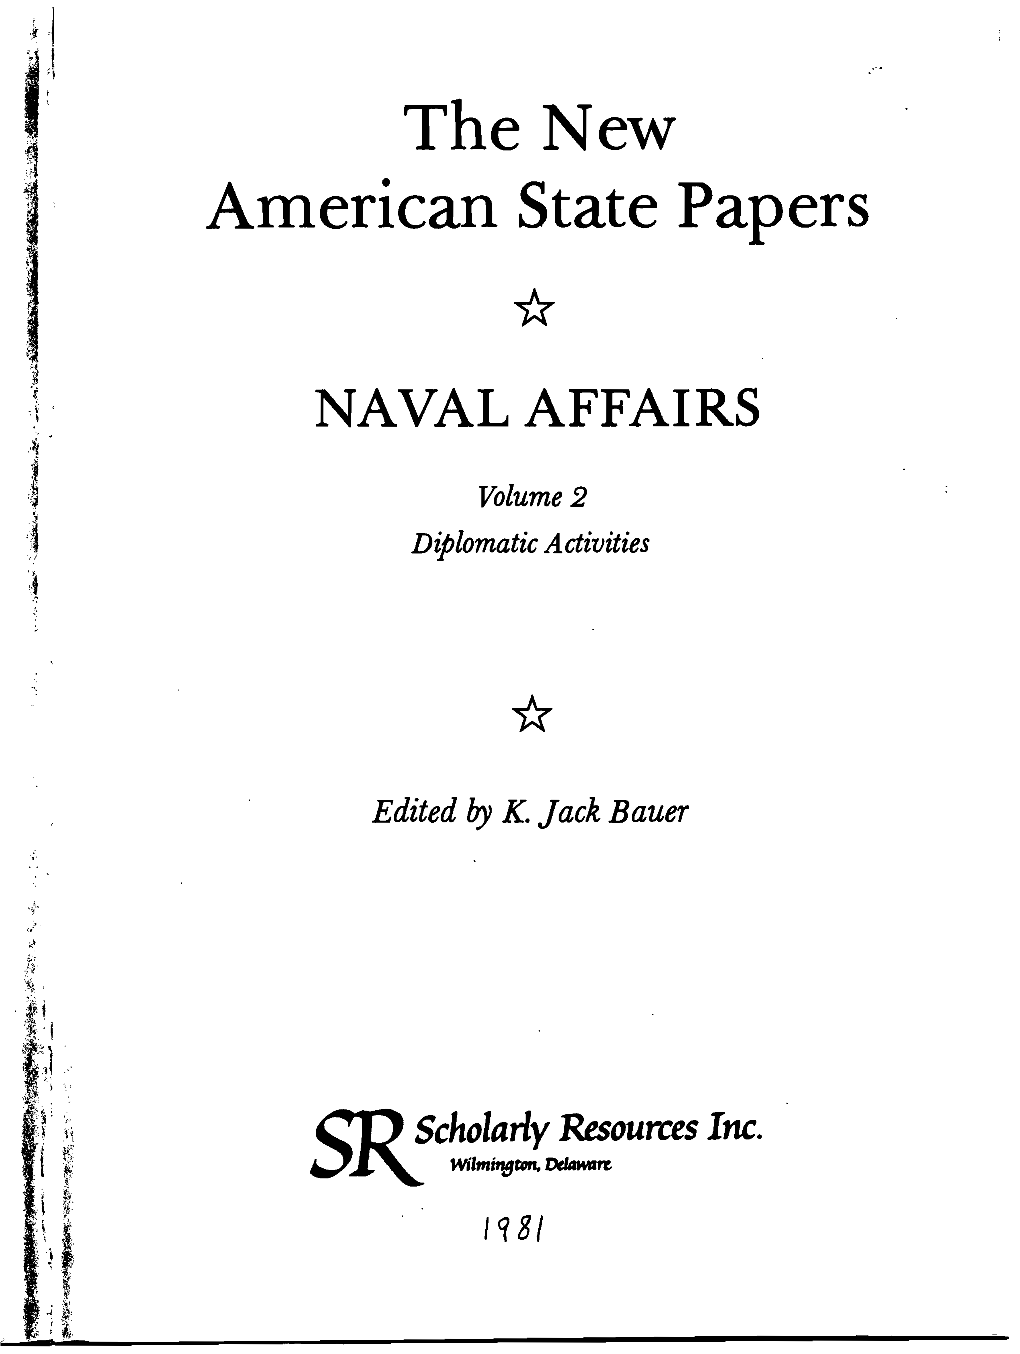 Naval Affairs